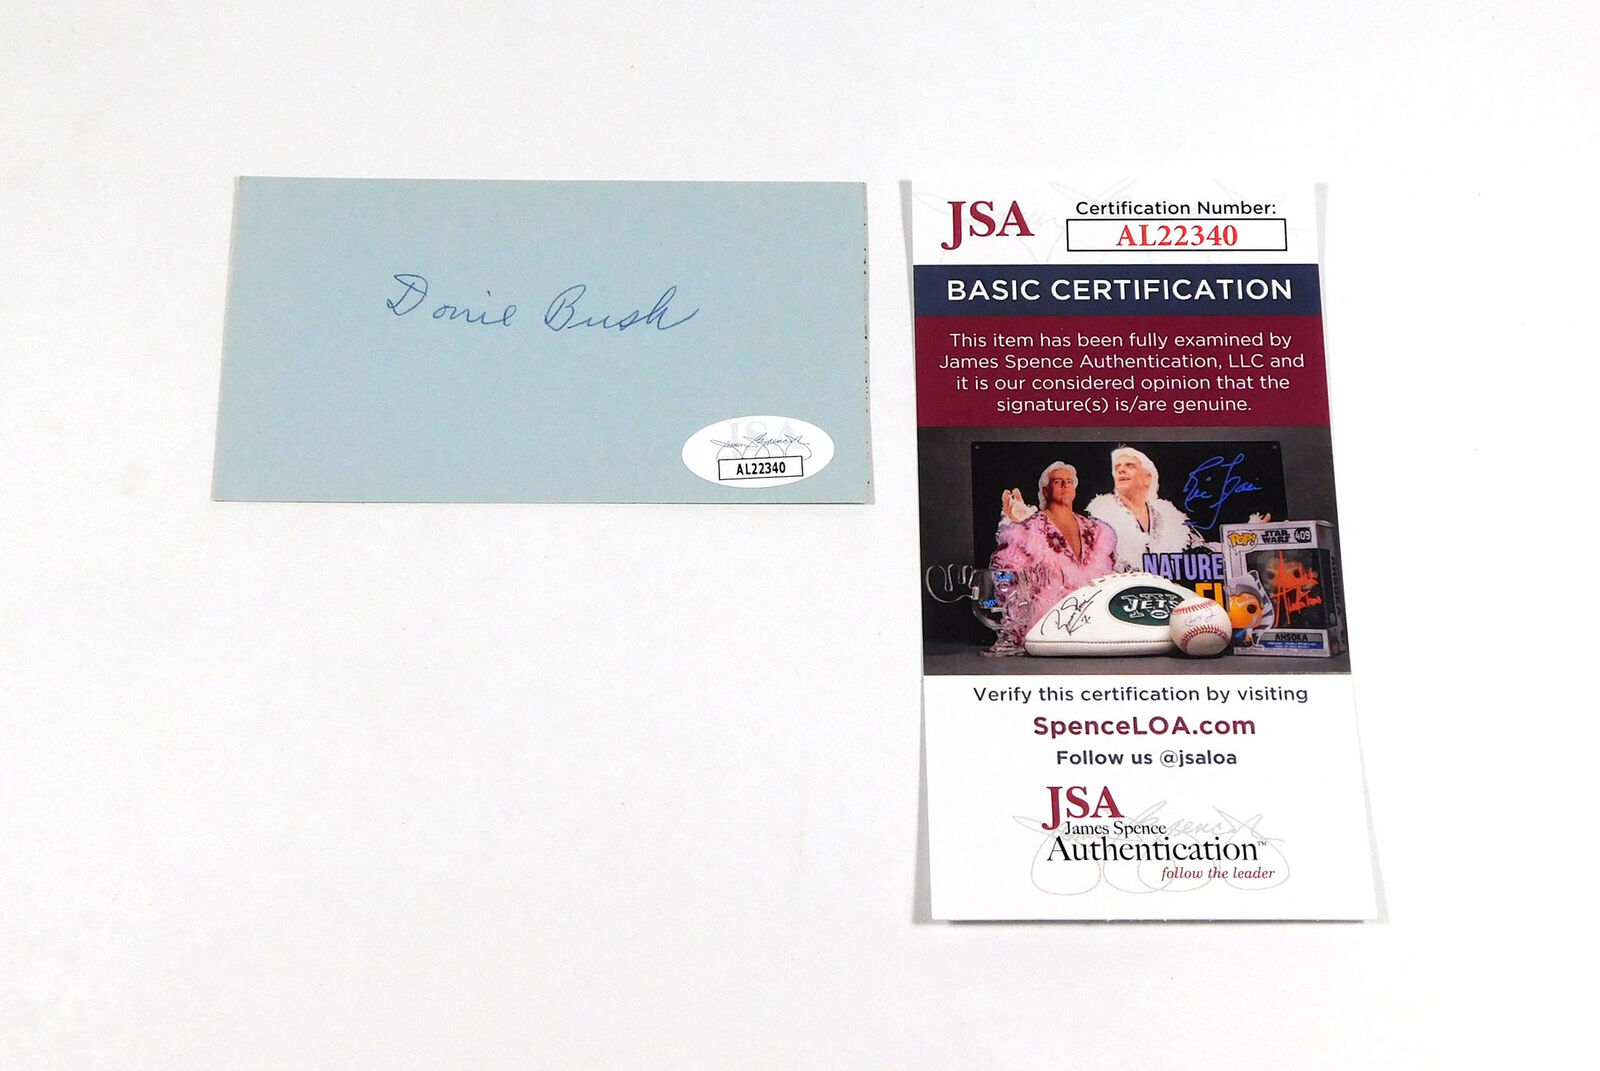 Donie Bush Signed 2.25 x 4.25 Cut JSA Auto